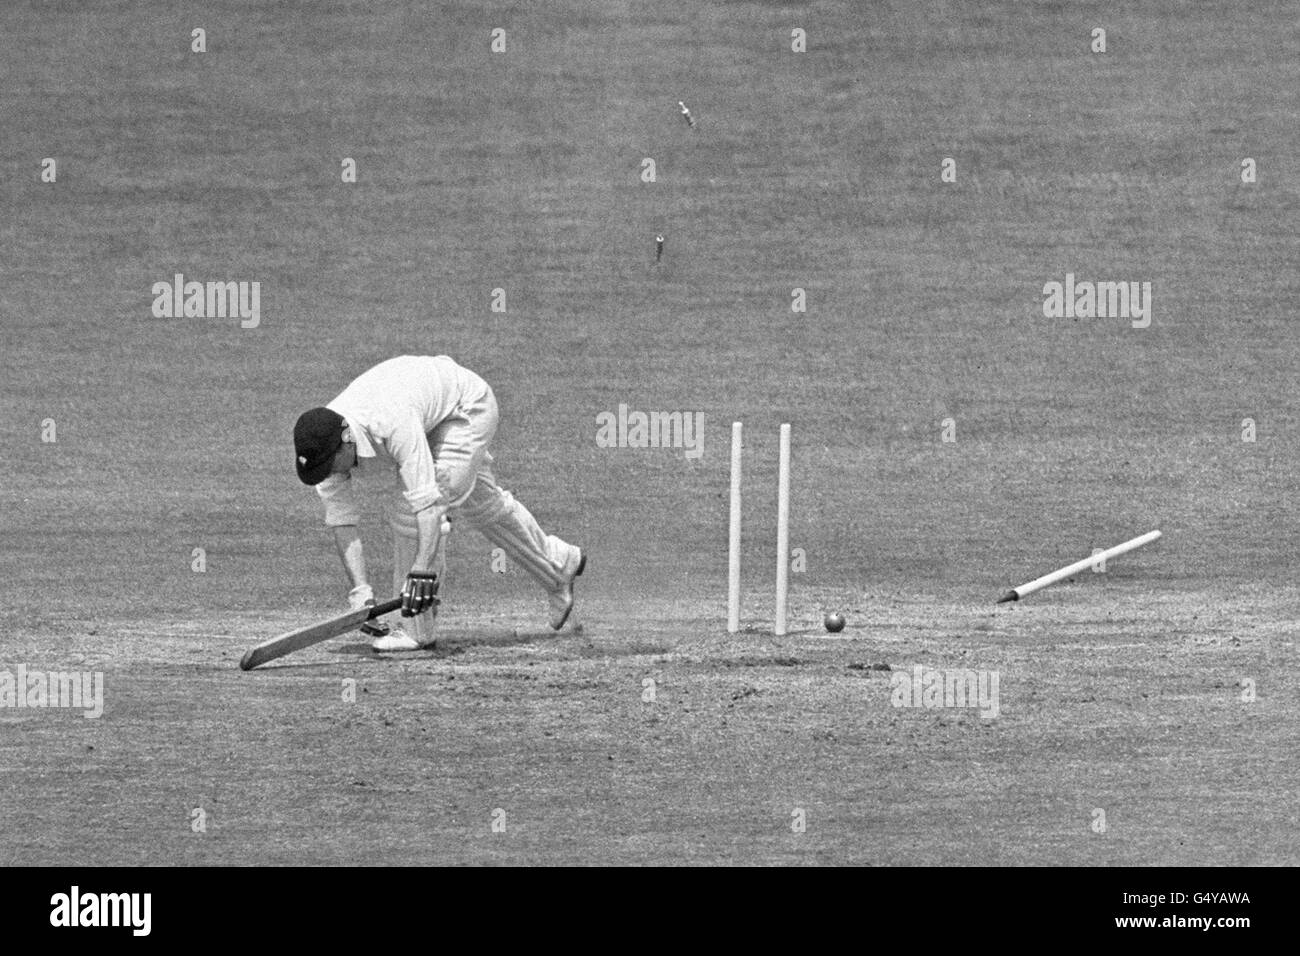 Cricket - Test Match - 4th Day - England v India - Headingley Stock Photo